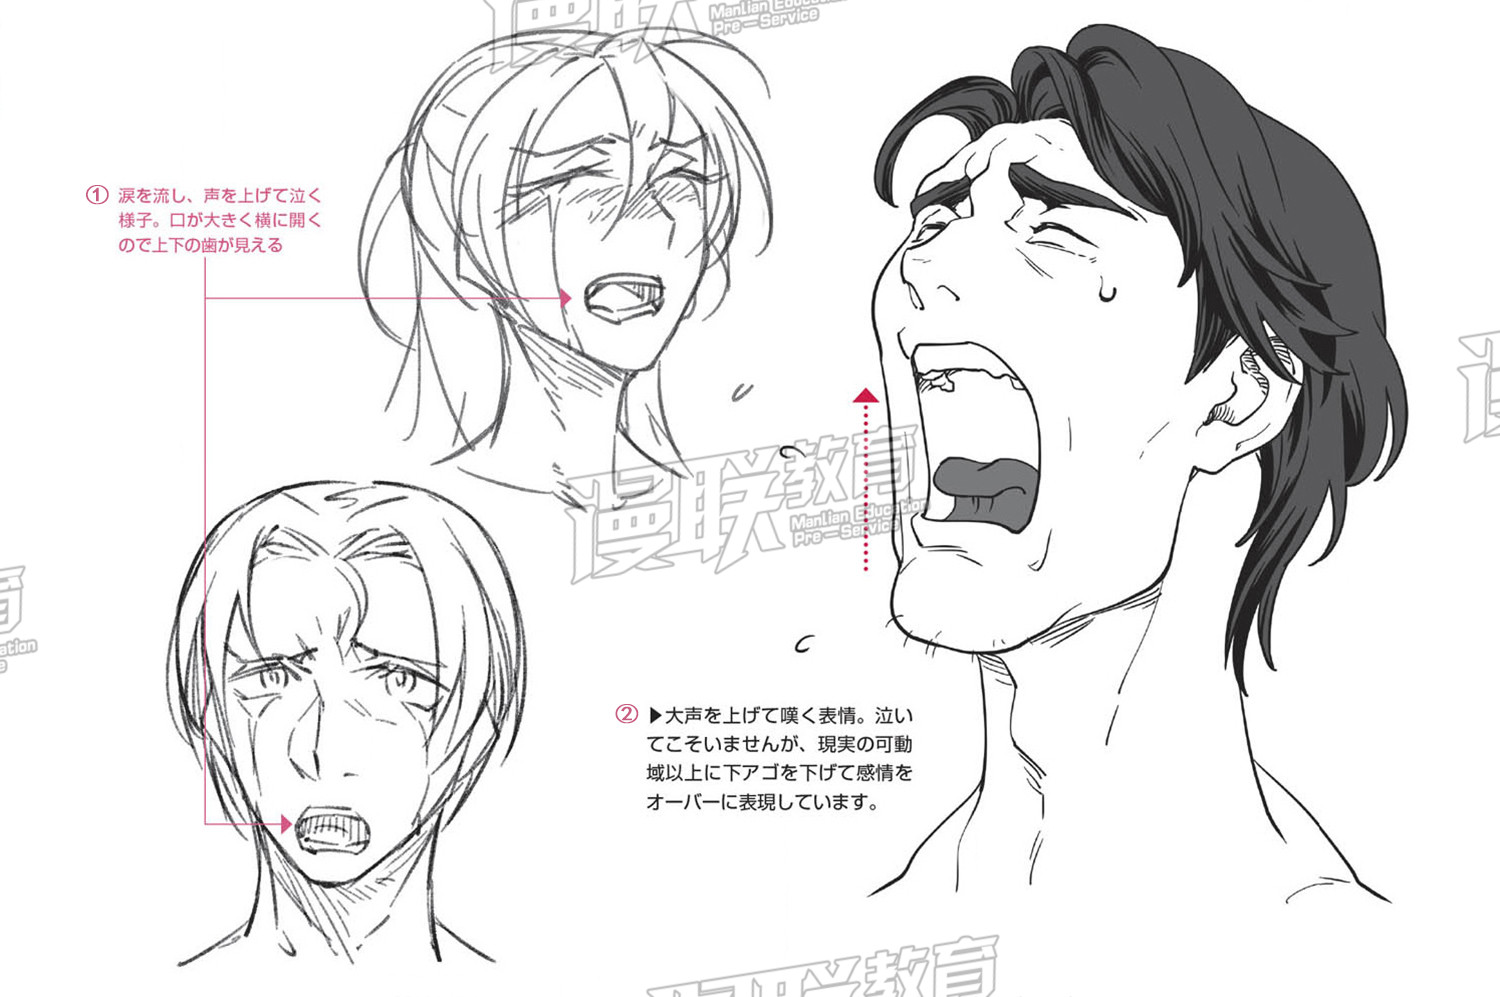 「教程」漫画人物6种基本表情的画法 part 03 “悲”的表情画法